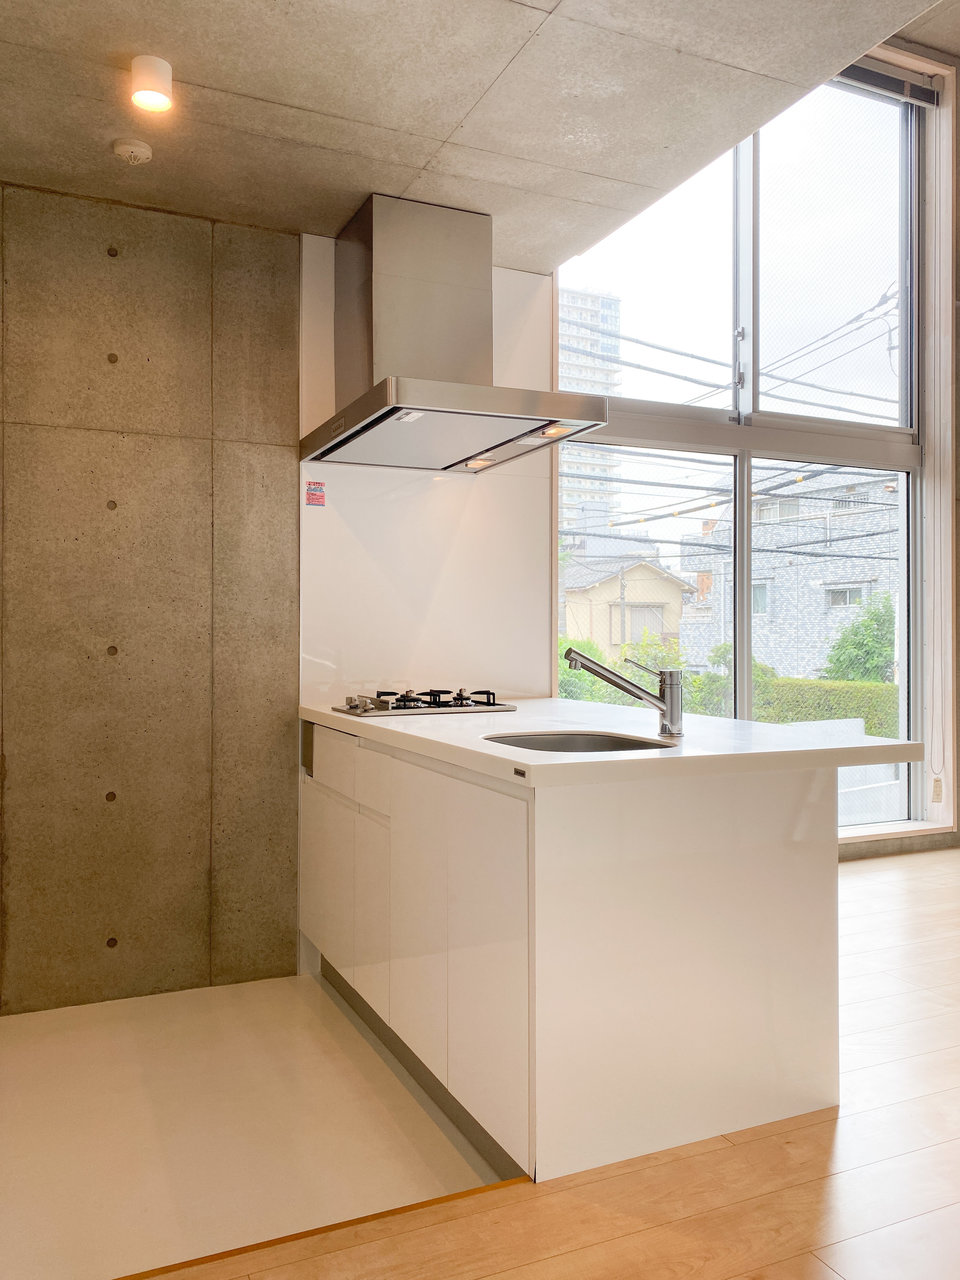 キッチンはシンプルですが、背面にもスペースがあって広々としています。大きな窓が近くにあって明るいのも好印象。